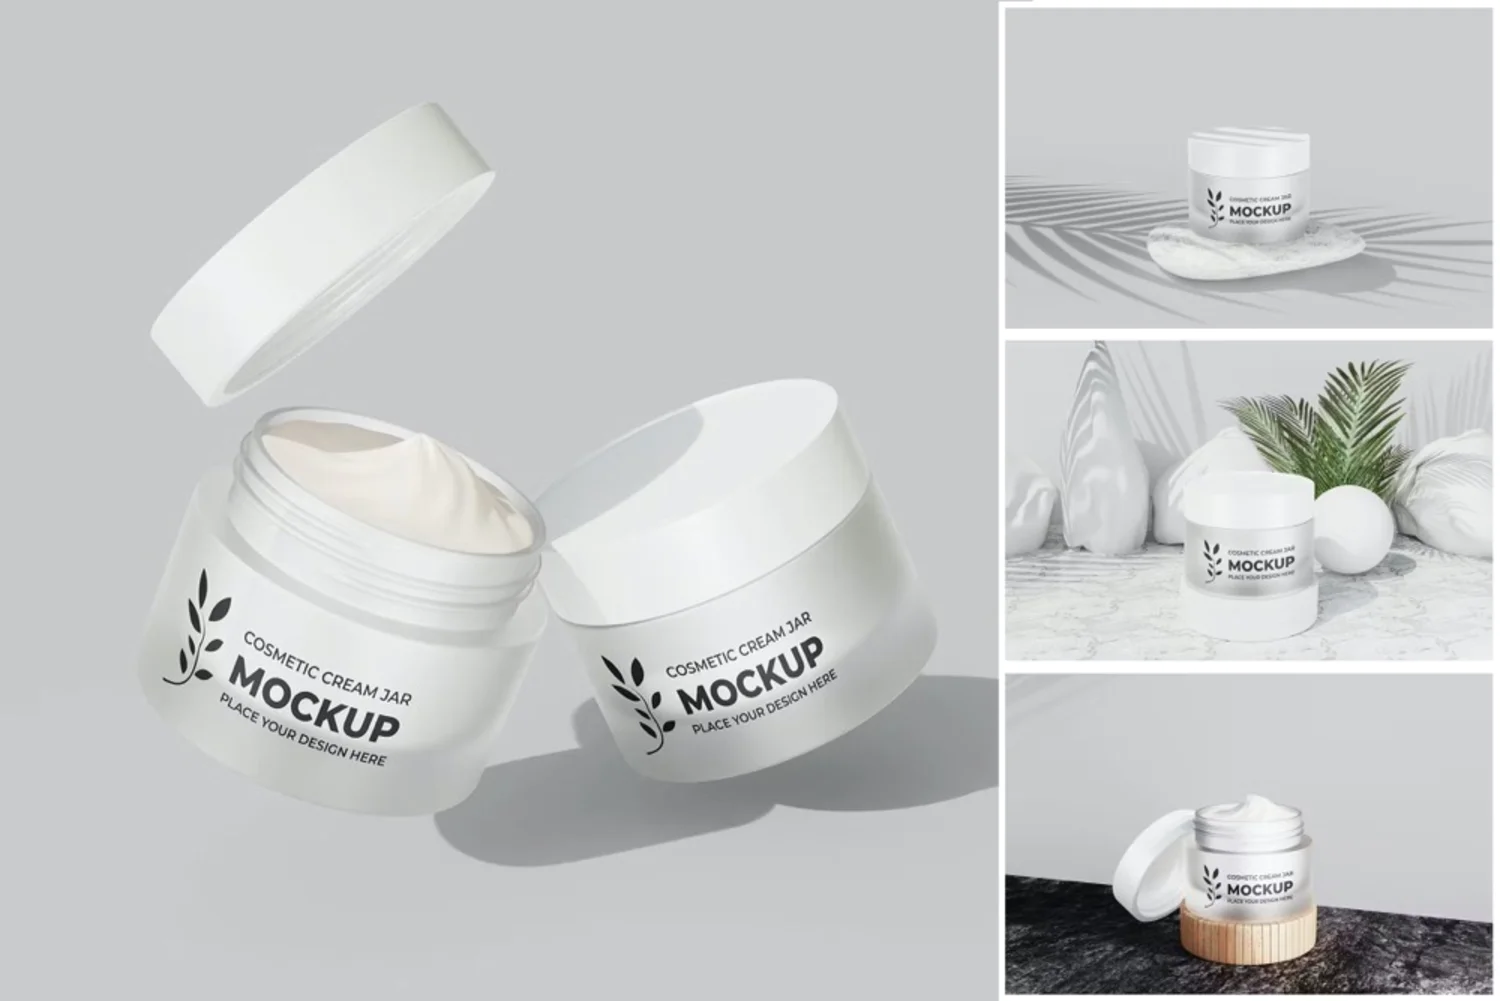 5269 时尚实用的化妆品霜瓶模拟展示设计PSD样机素材 Cosmetic Cream Jar Mockup@GOOODME.COM